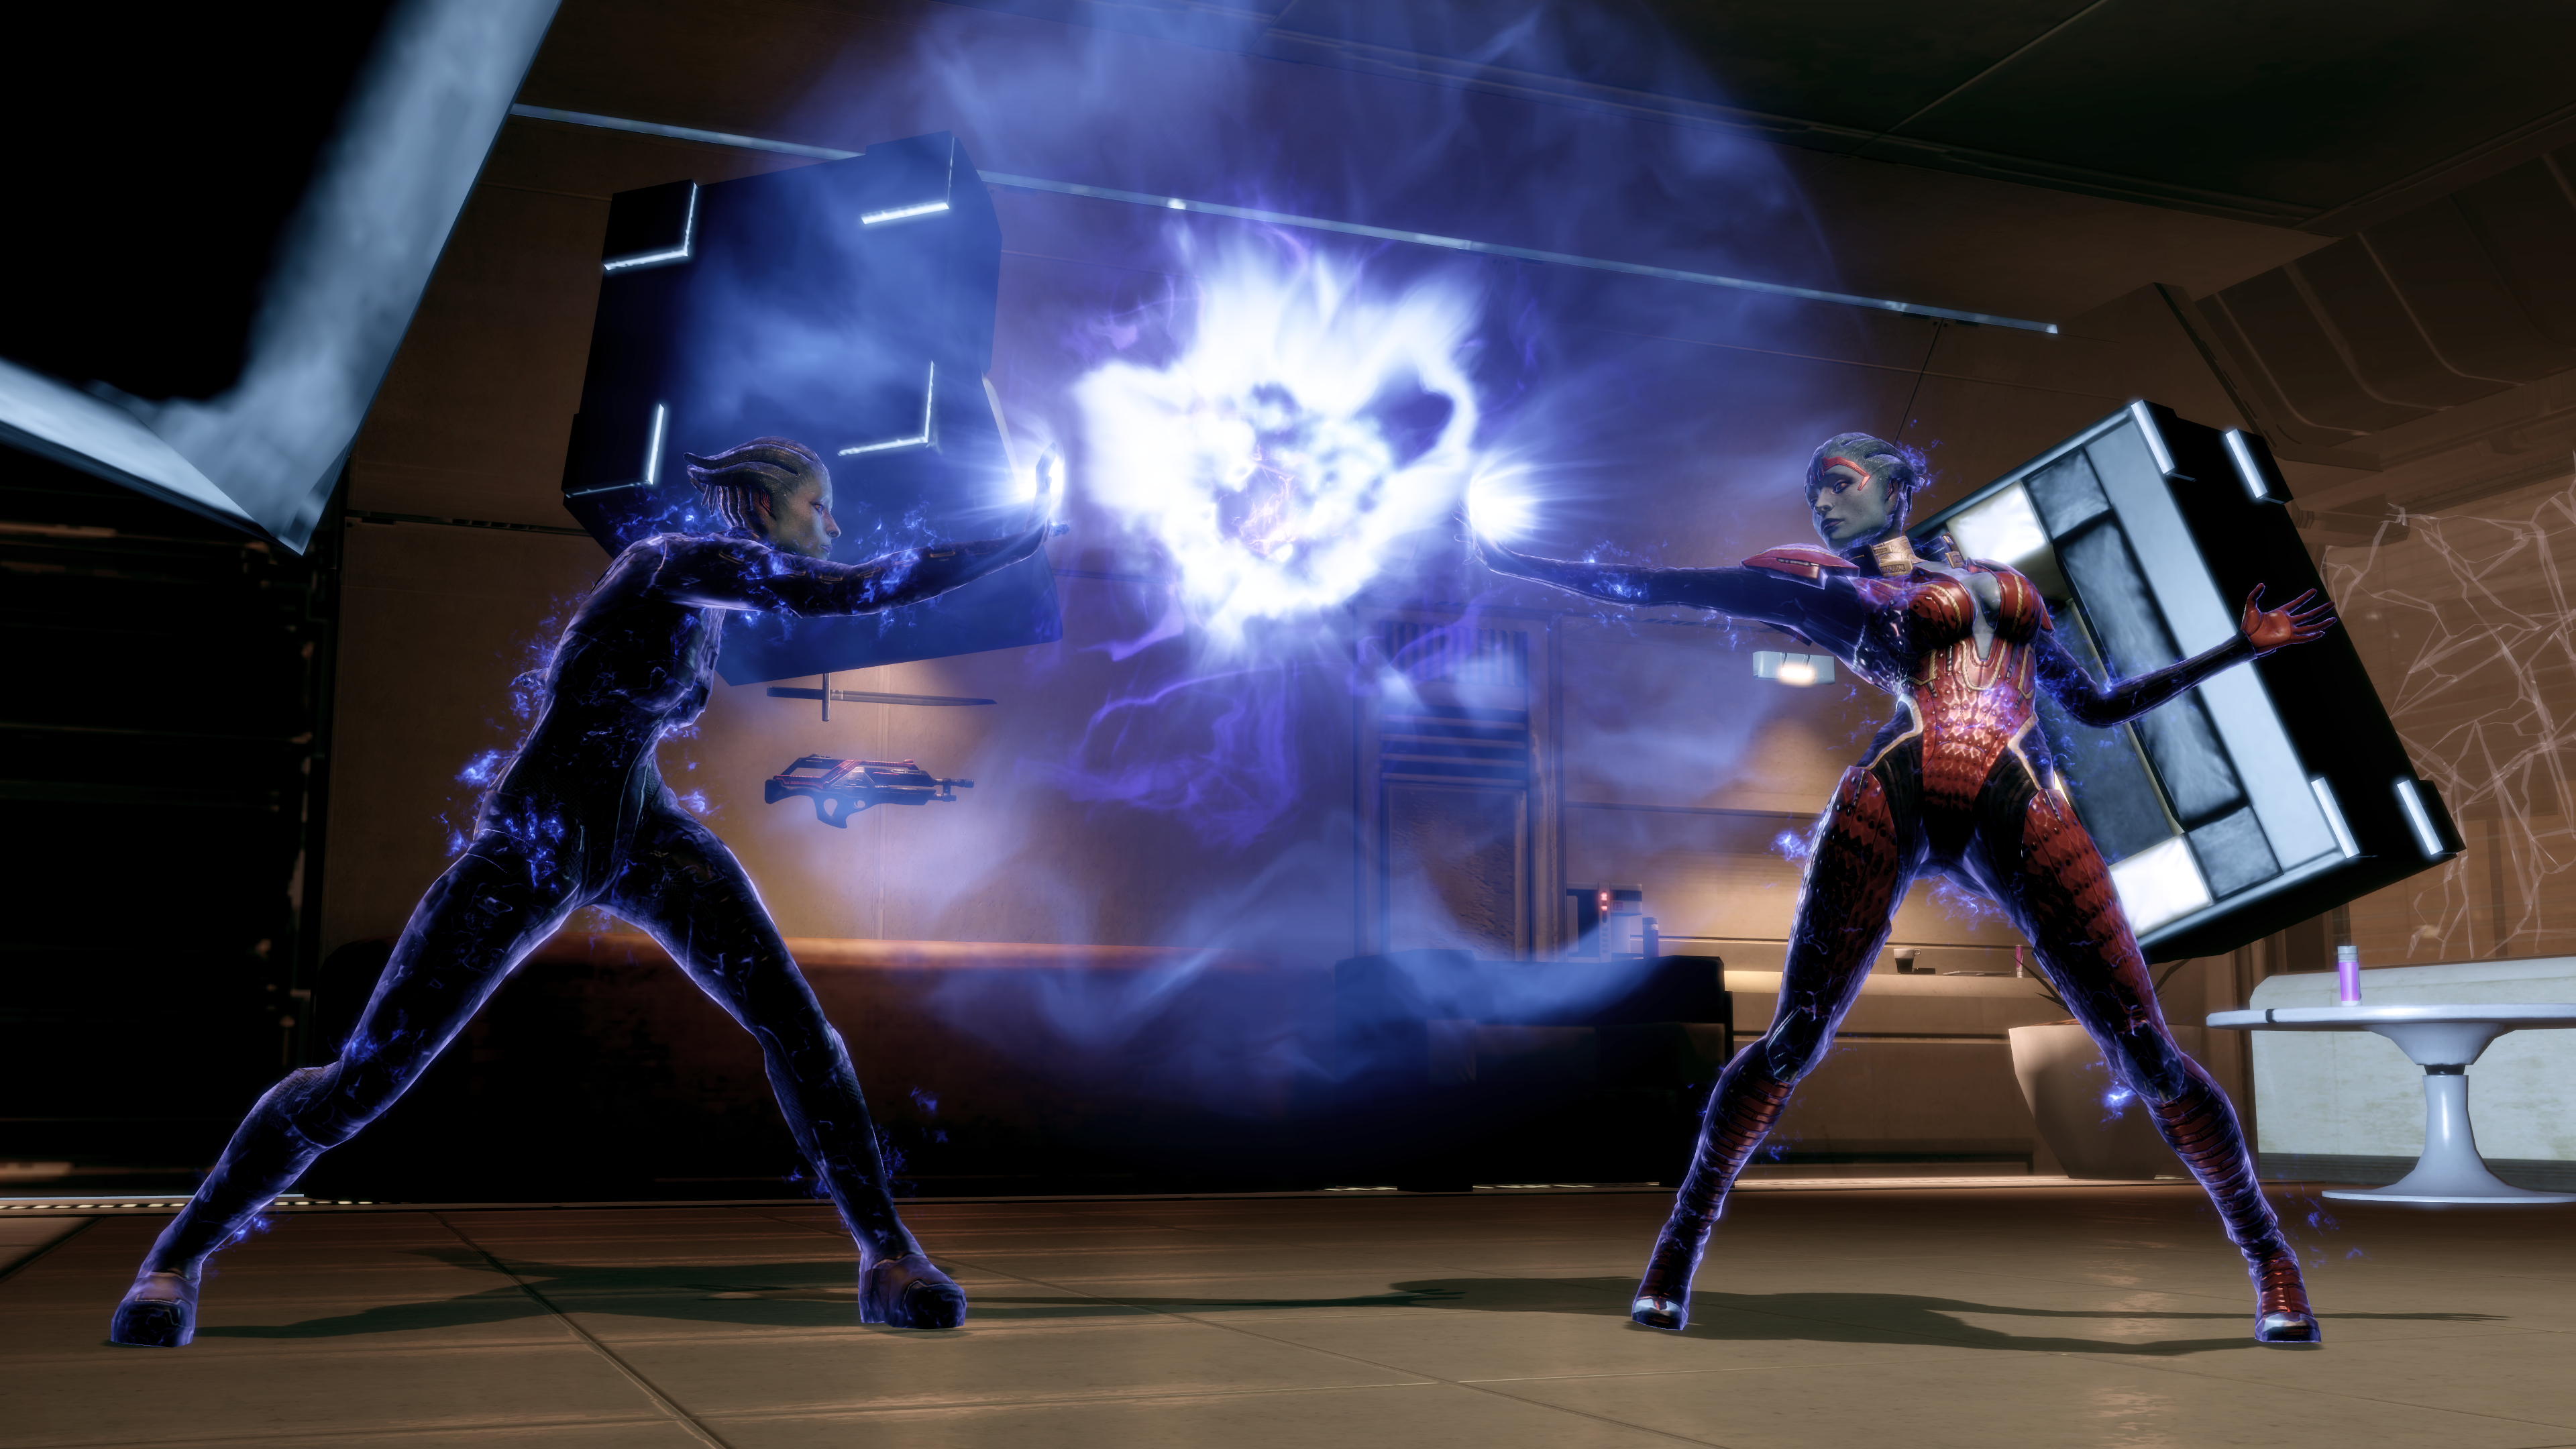 Mass Effect Biotics Samara Science Fiction Mass Effect 2 Asari Video Games 3840x2160